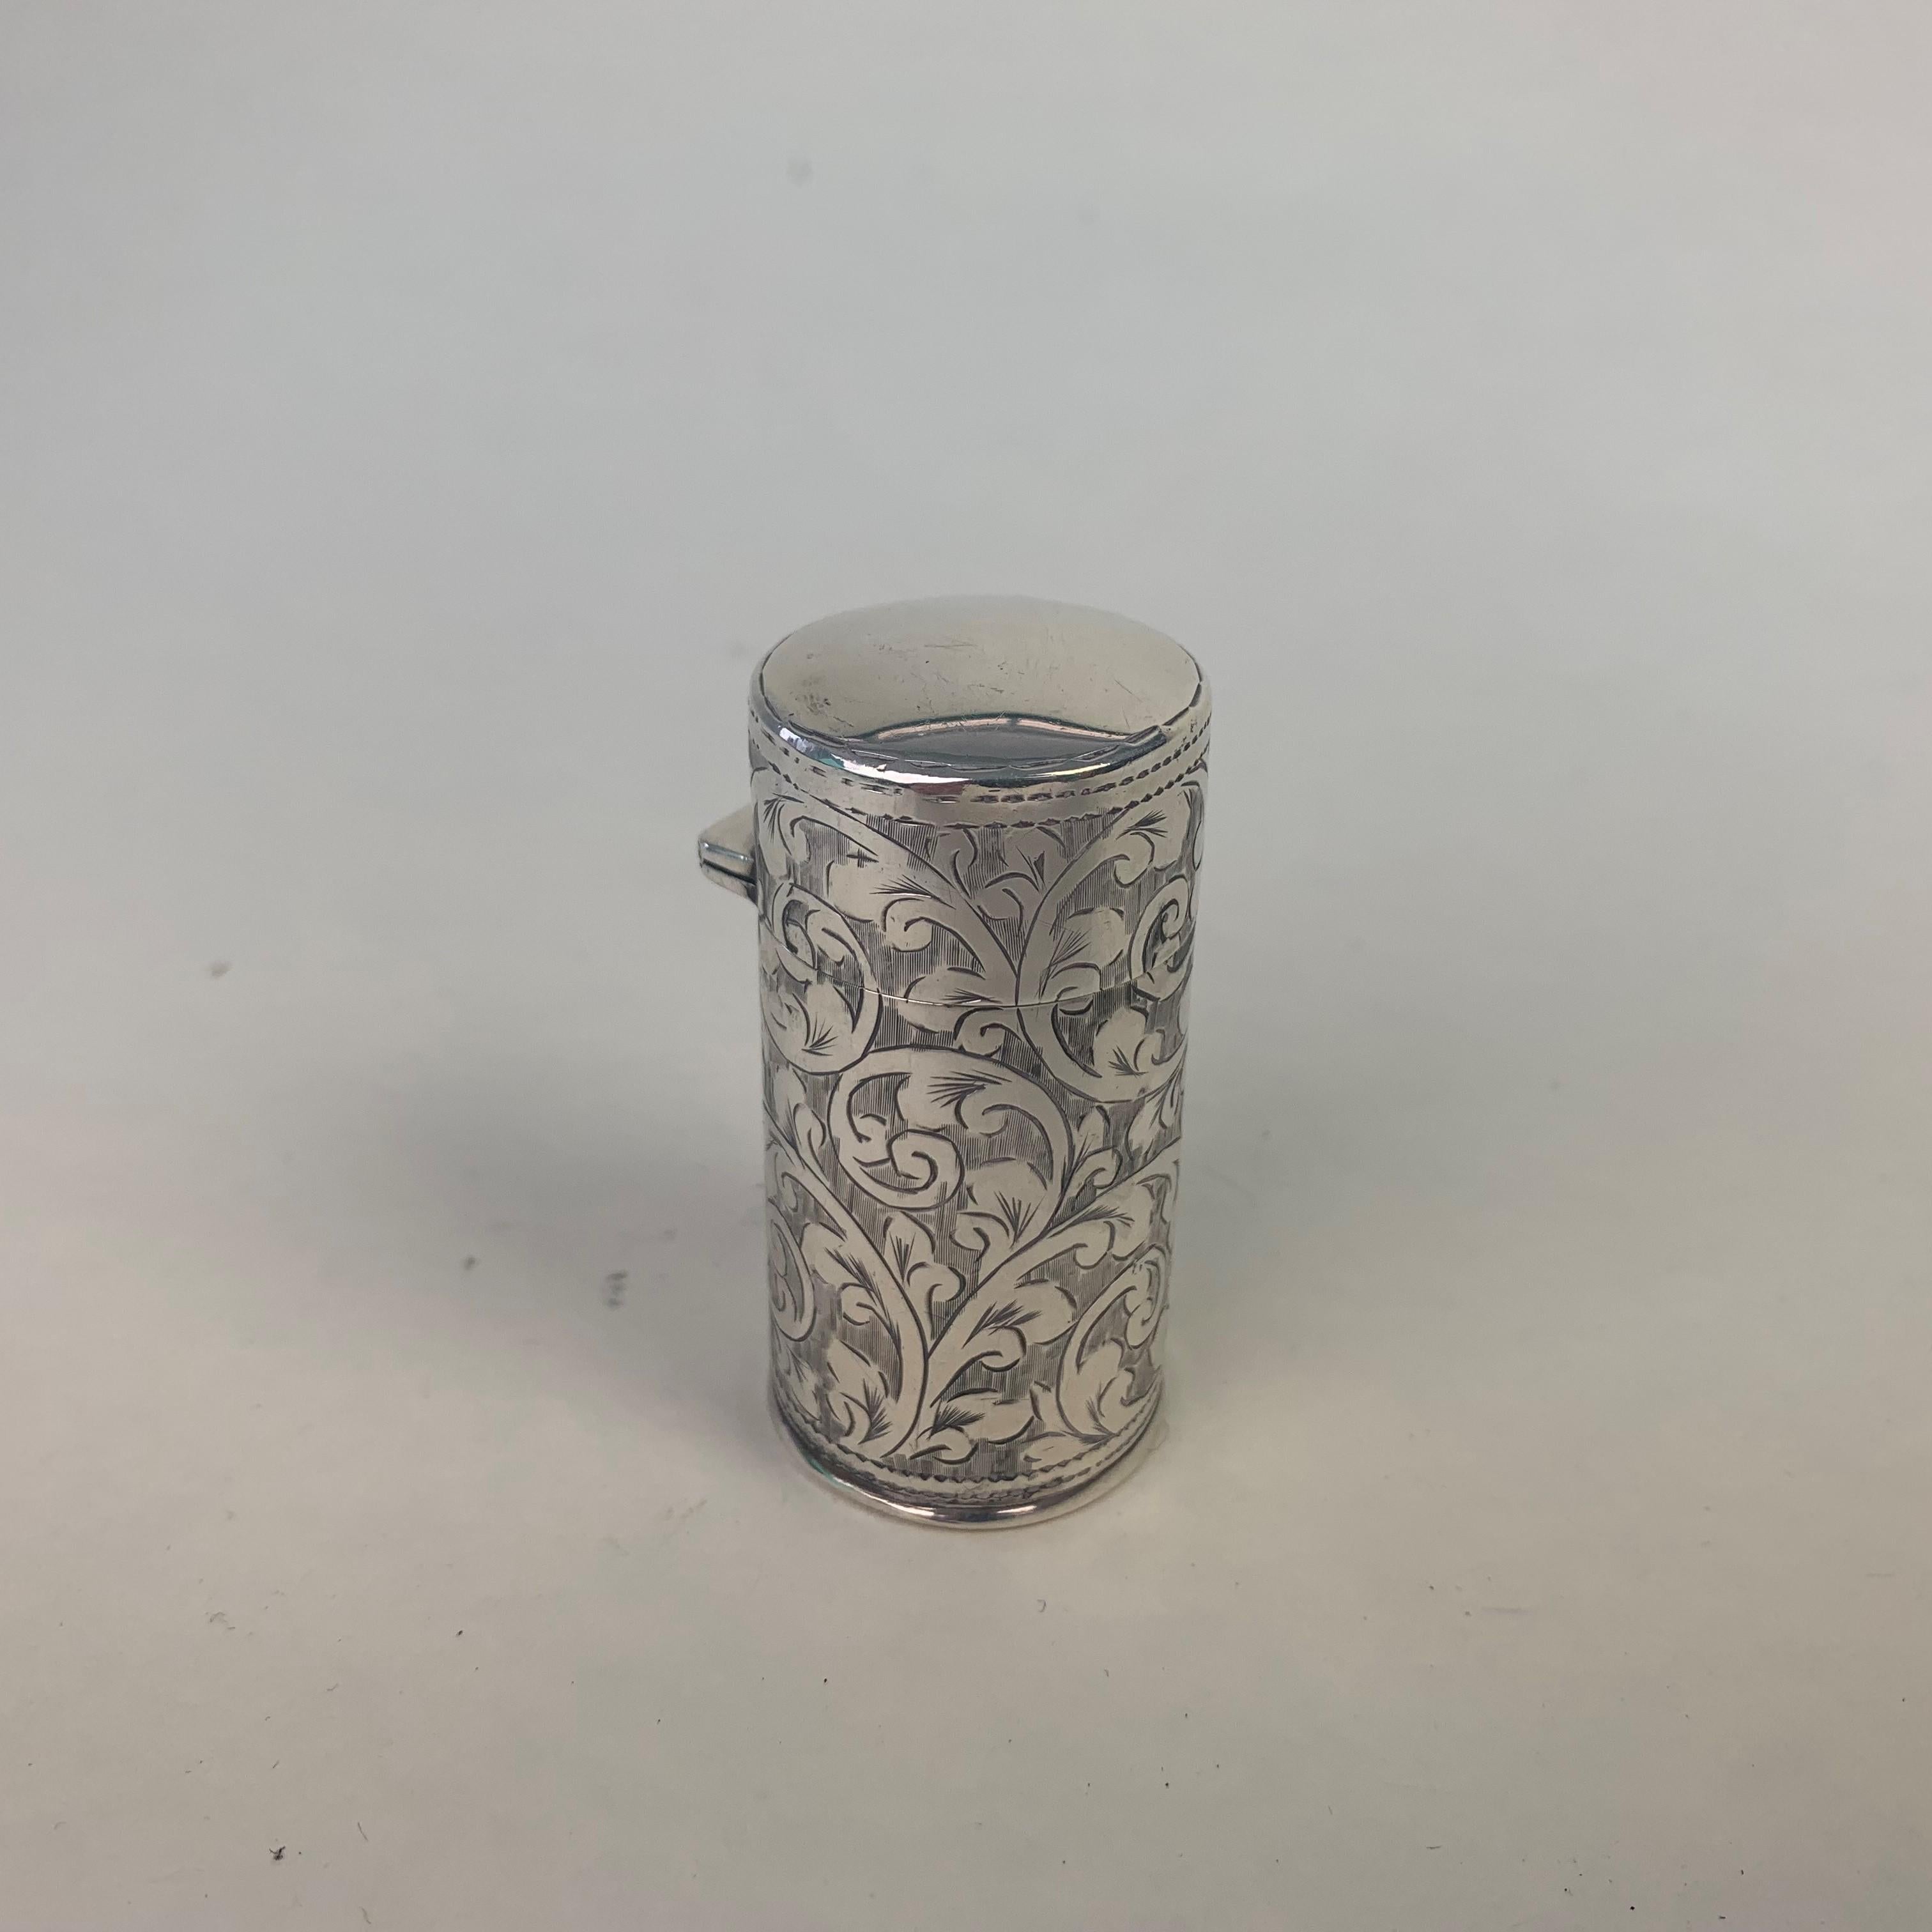 Eine feine Qualität Silber ummantelt Duft Flasche graviert mit scrolling blättrigen Dekoration. Der Klappdeckel mit Schnappverschluss umschließt den originalen Glasstopfen, der in die feste Glaseinlage passt.
Gepunzt in Birmingham 1905 von Benjamin